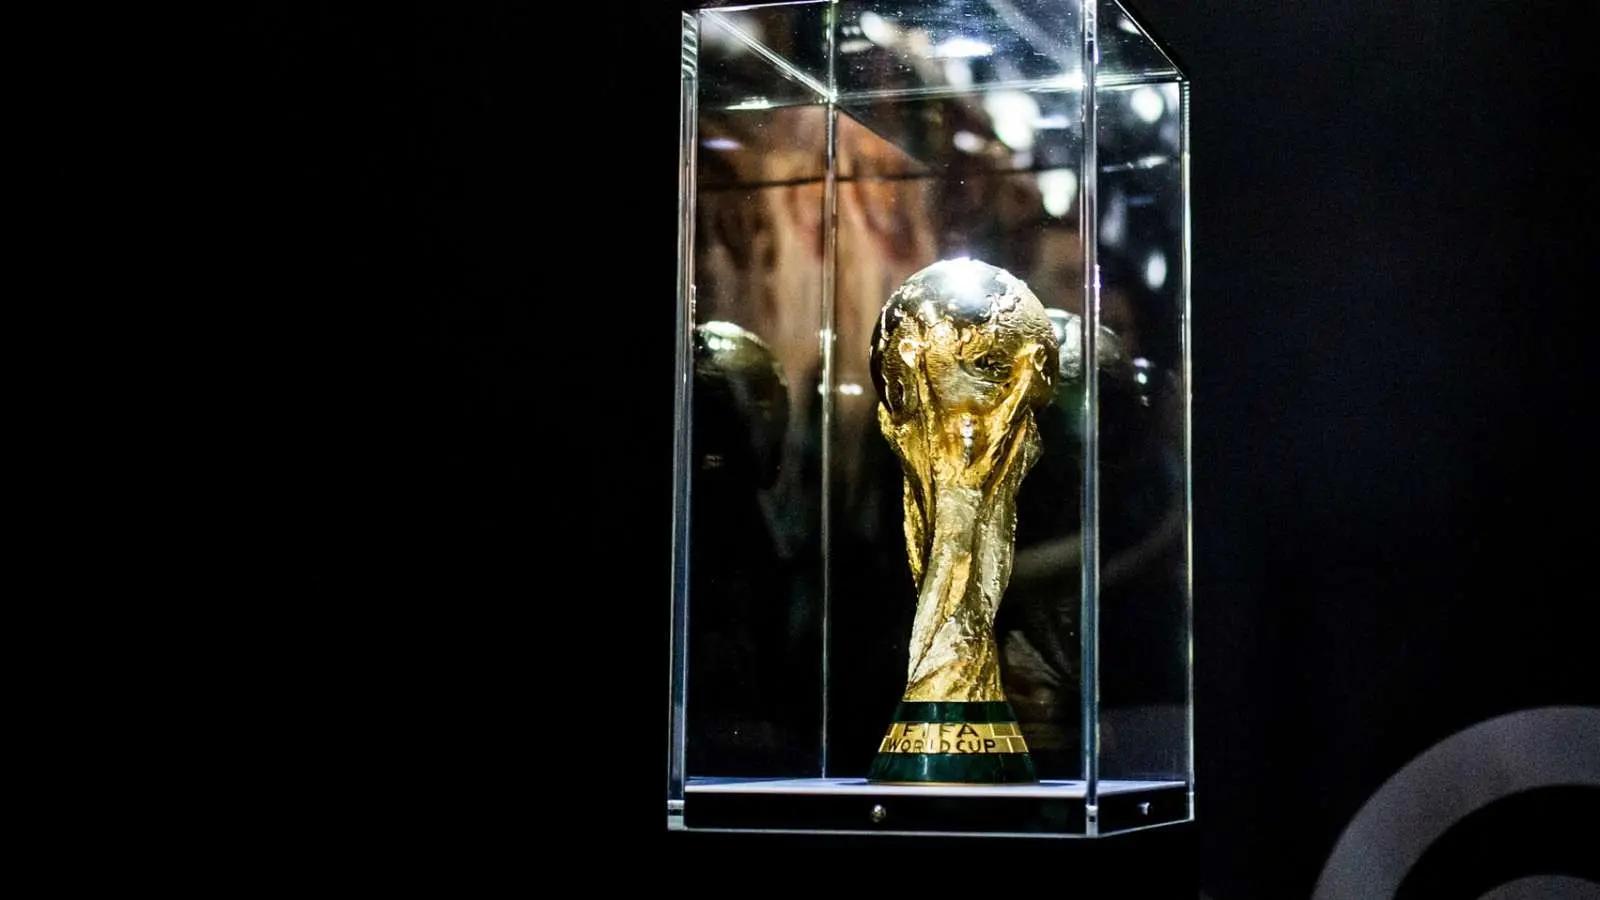  انصراف اندونزی از میزبانی جام جهانی ۲۰۳۴ و حمایت از عربستان

